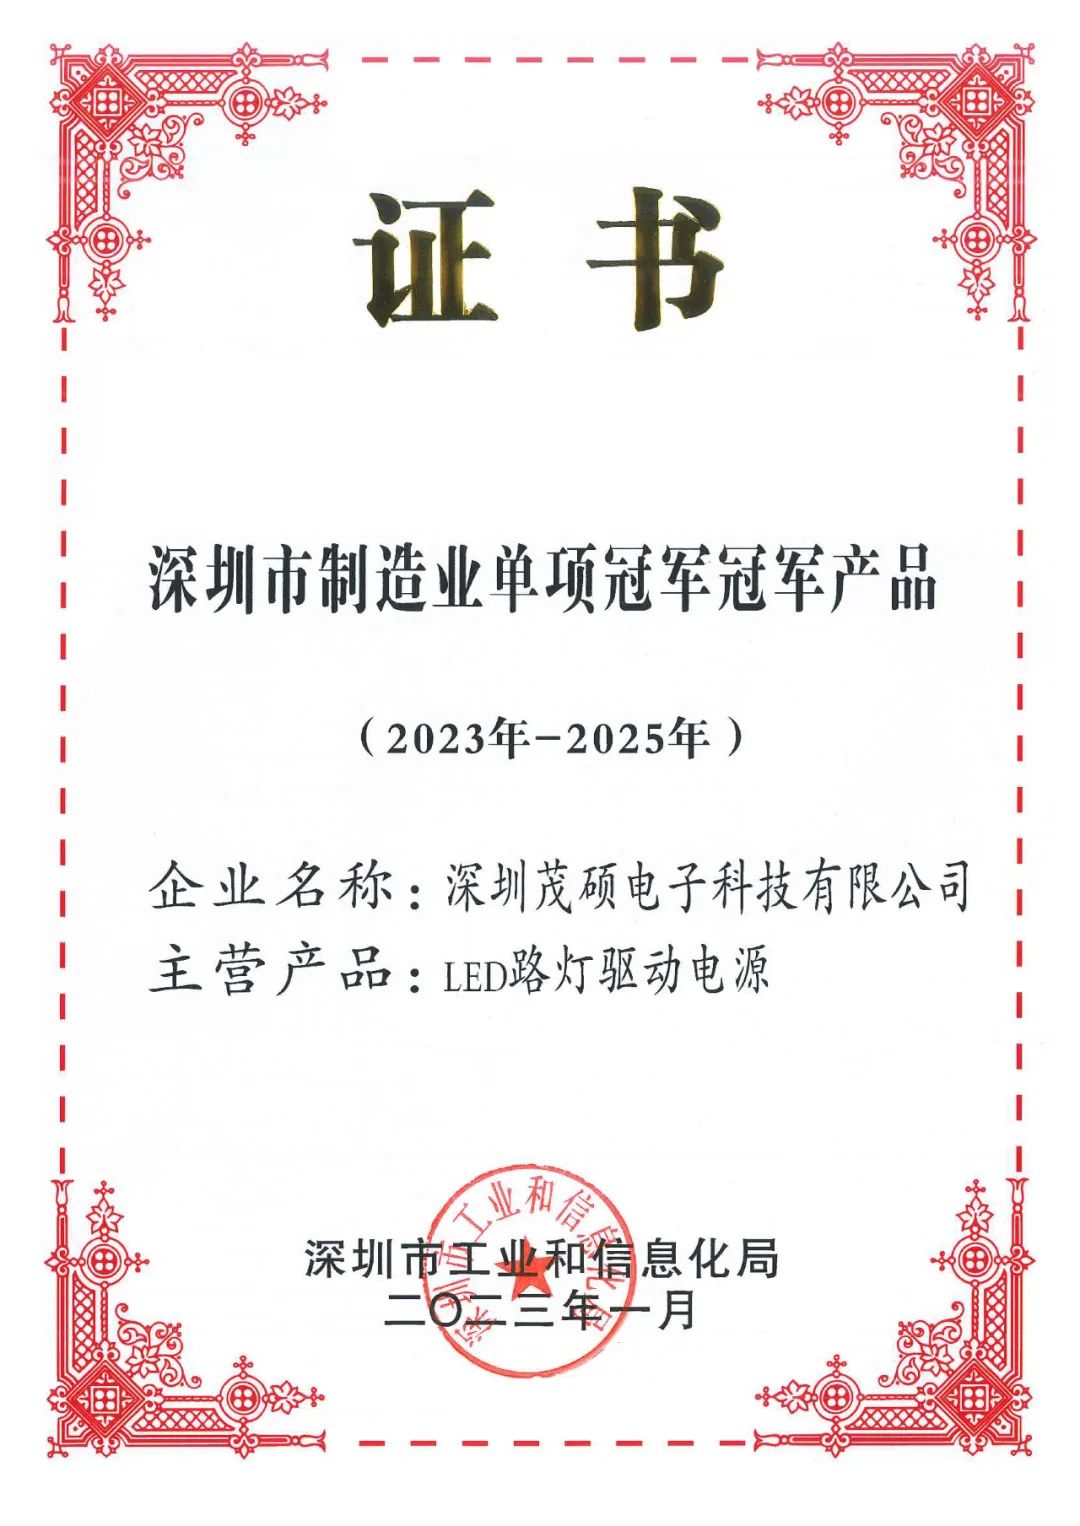 3354cc金沙集团电子LED路灯驱动电源荣获第一批深圳市制造业单项冠军产品荣誉(图1)